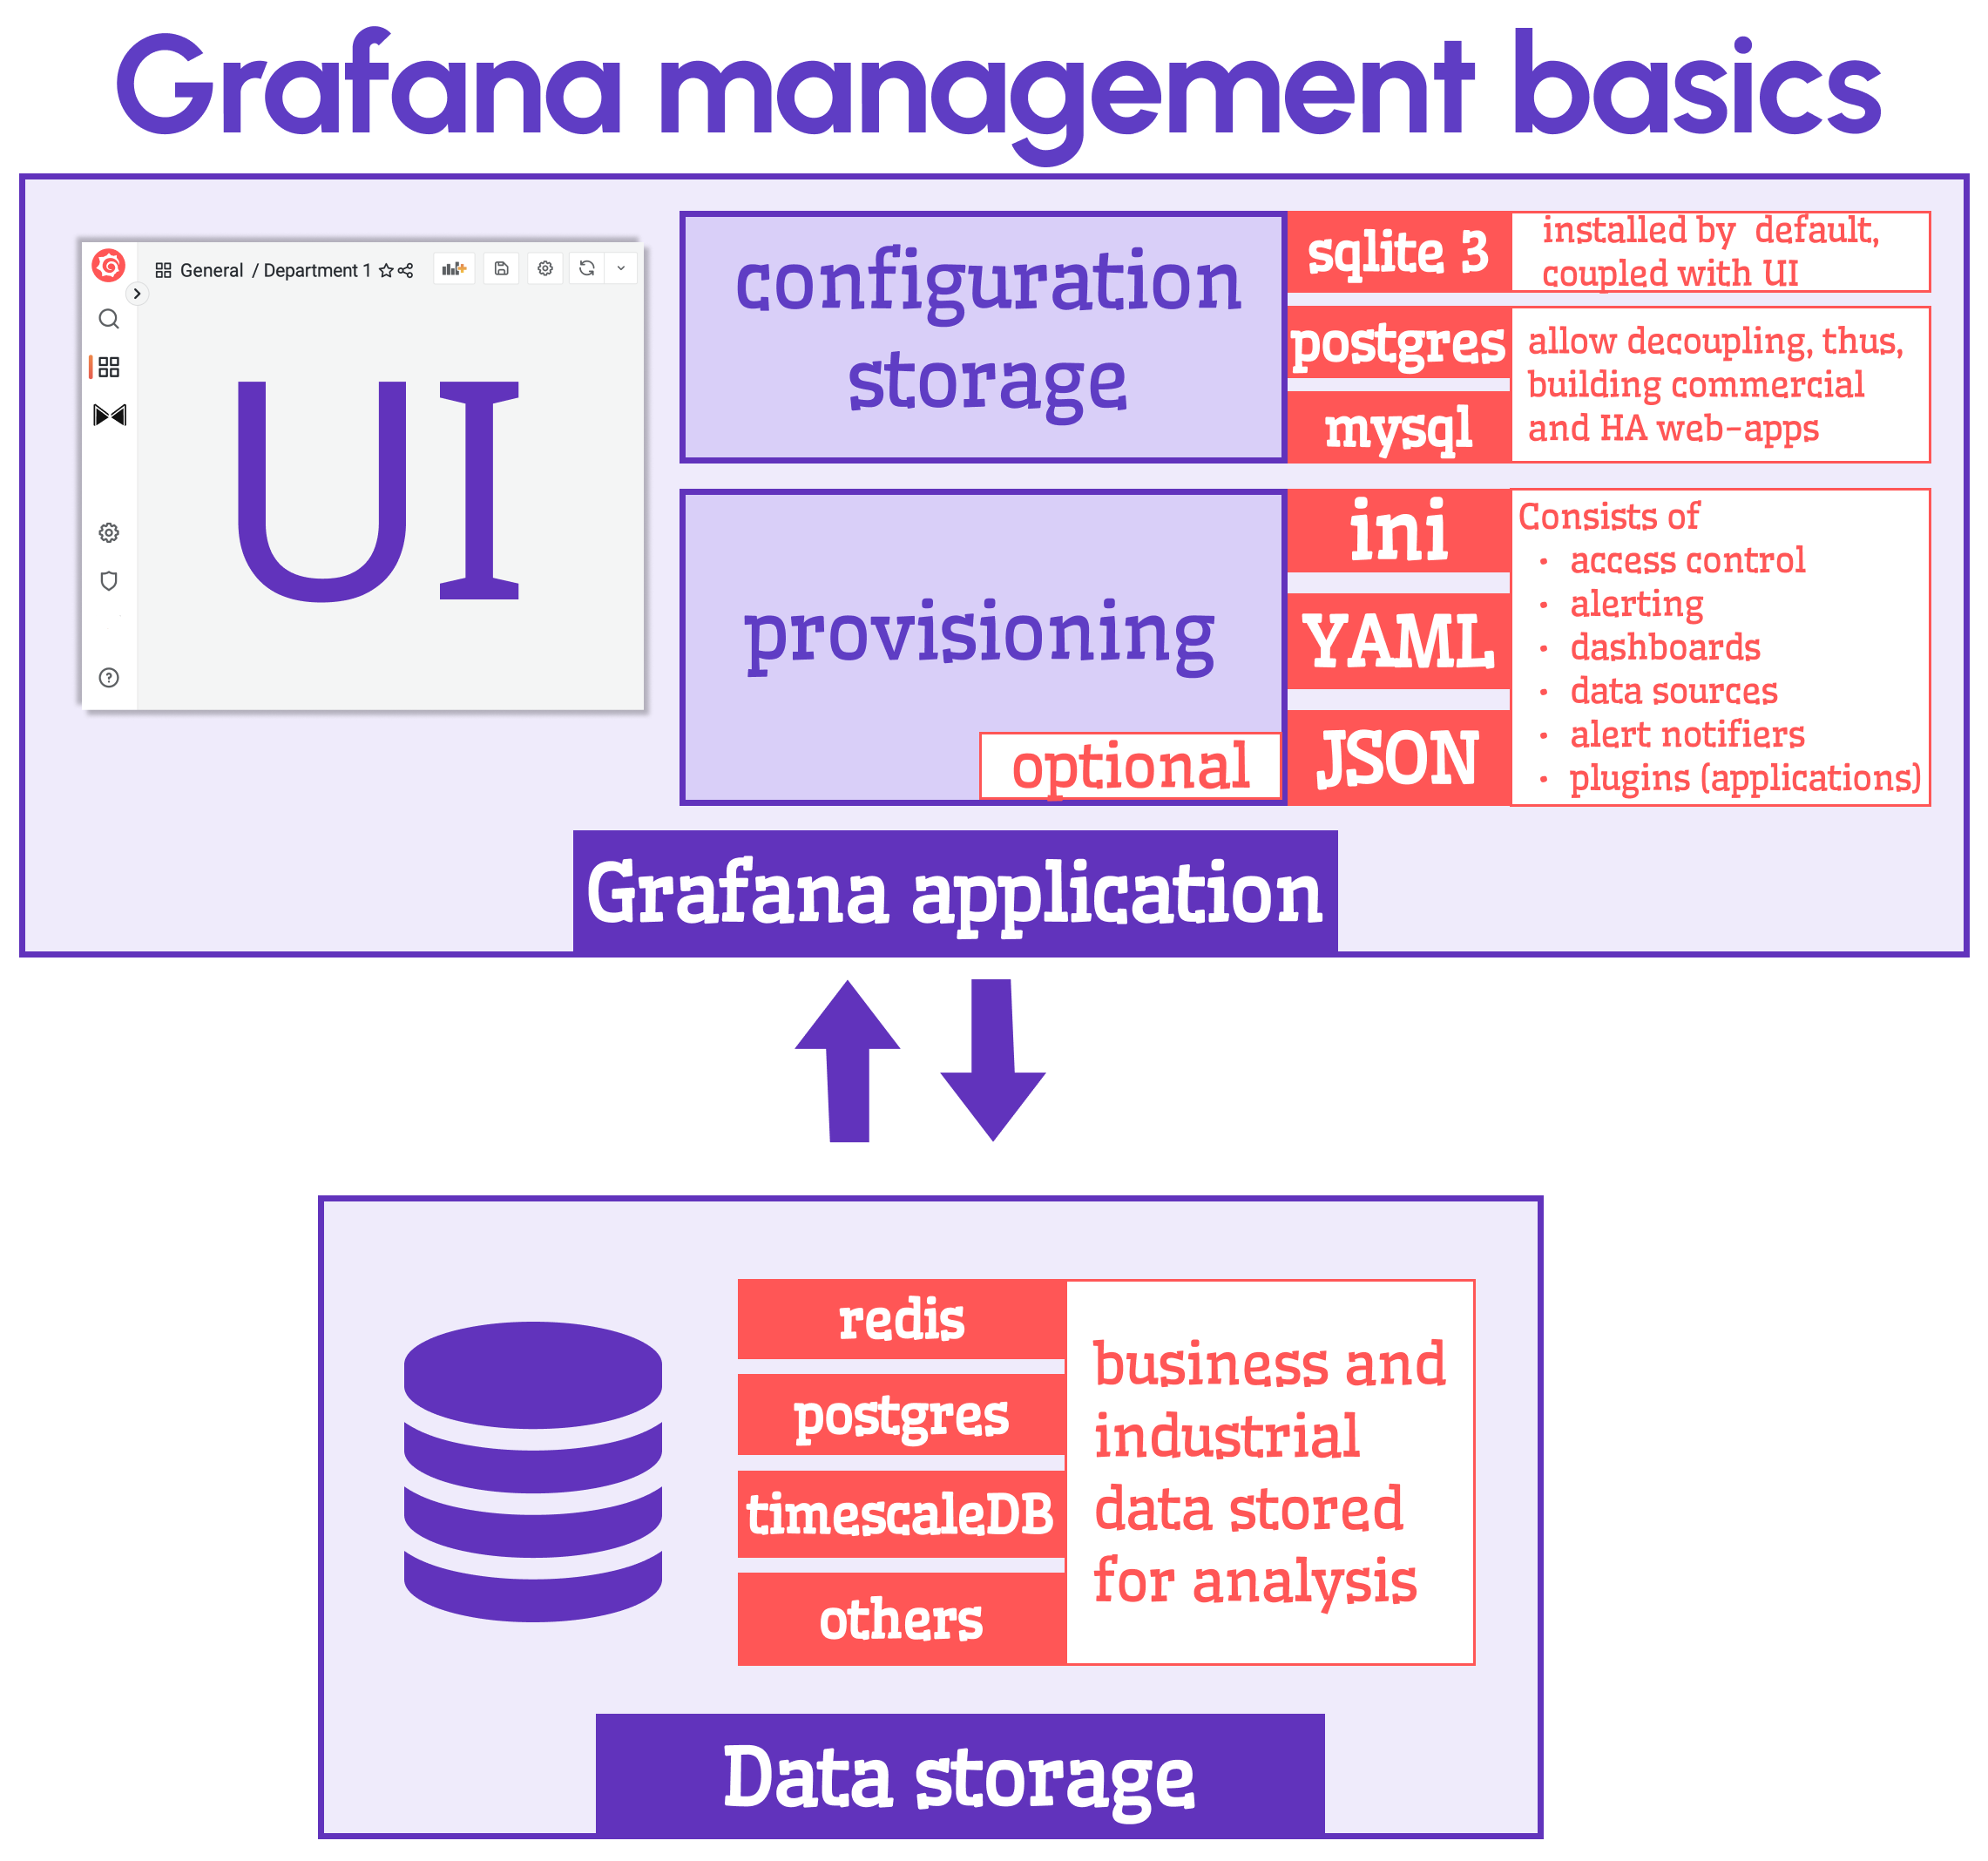 Grafana management basics: Configuration, Provisioning and Data storage.